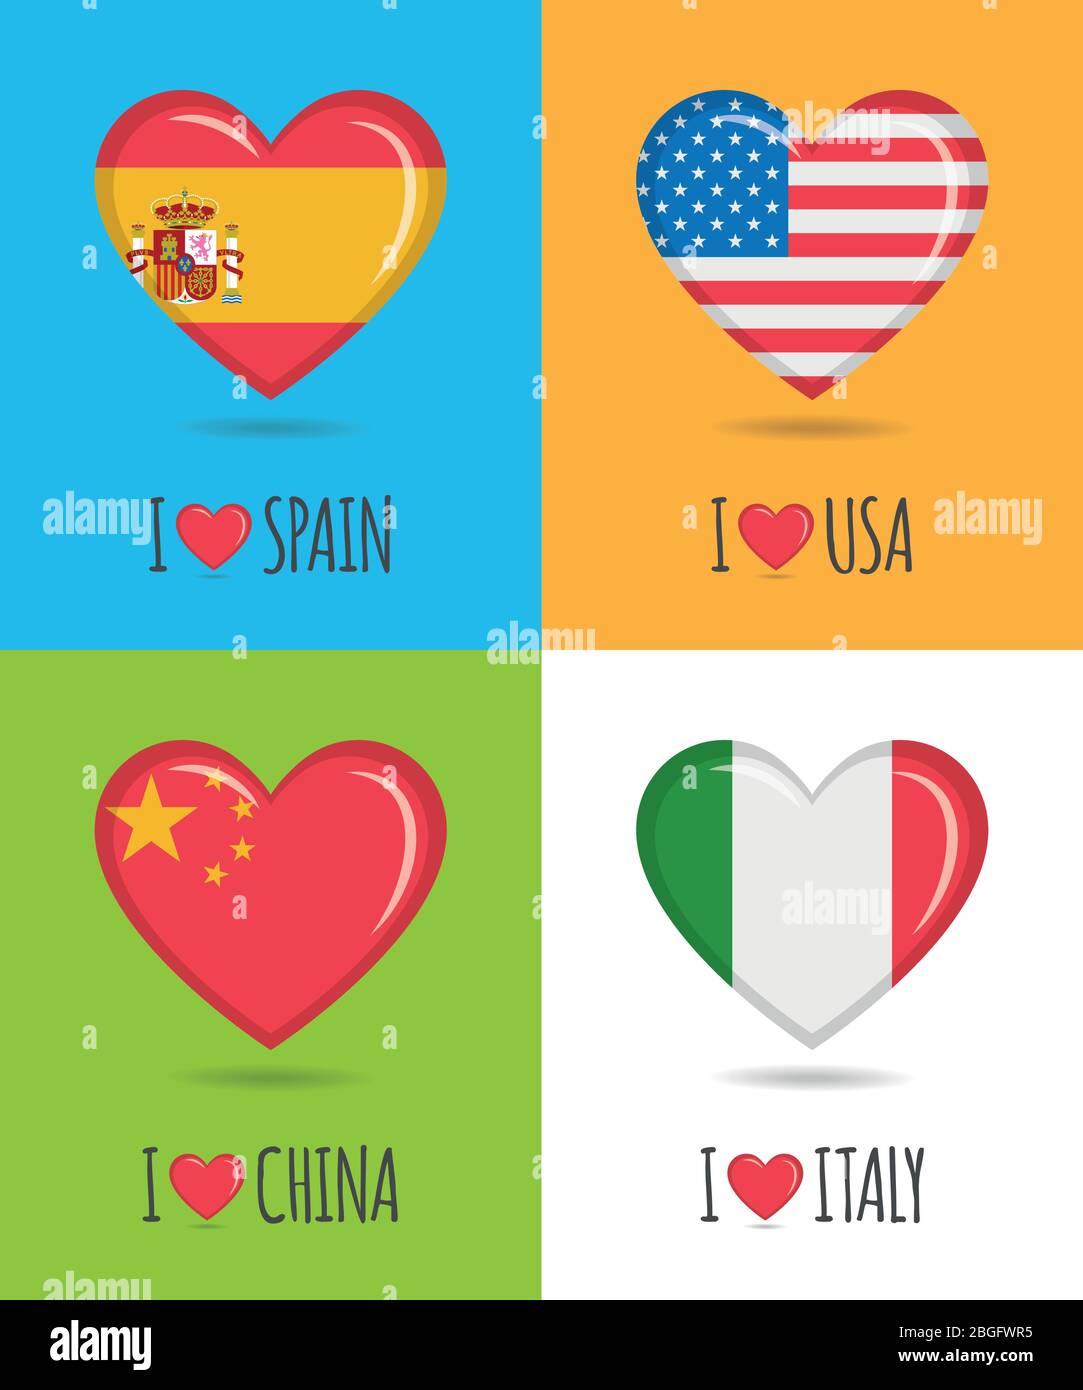 Affiches épris et colorées de l'Espagne, des États-Unis, de la Chine et de l'Italie avec drapeau national en forme de coeur et illustration vectorielle de texte Illustration de Vecteur